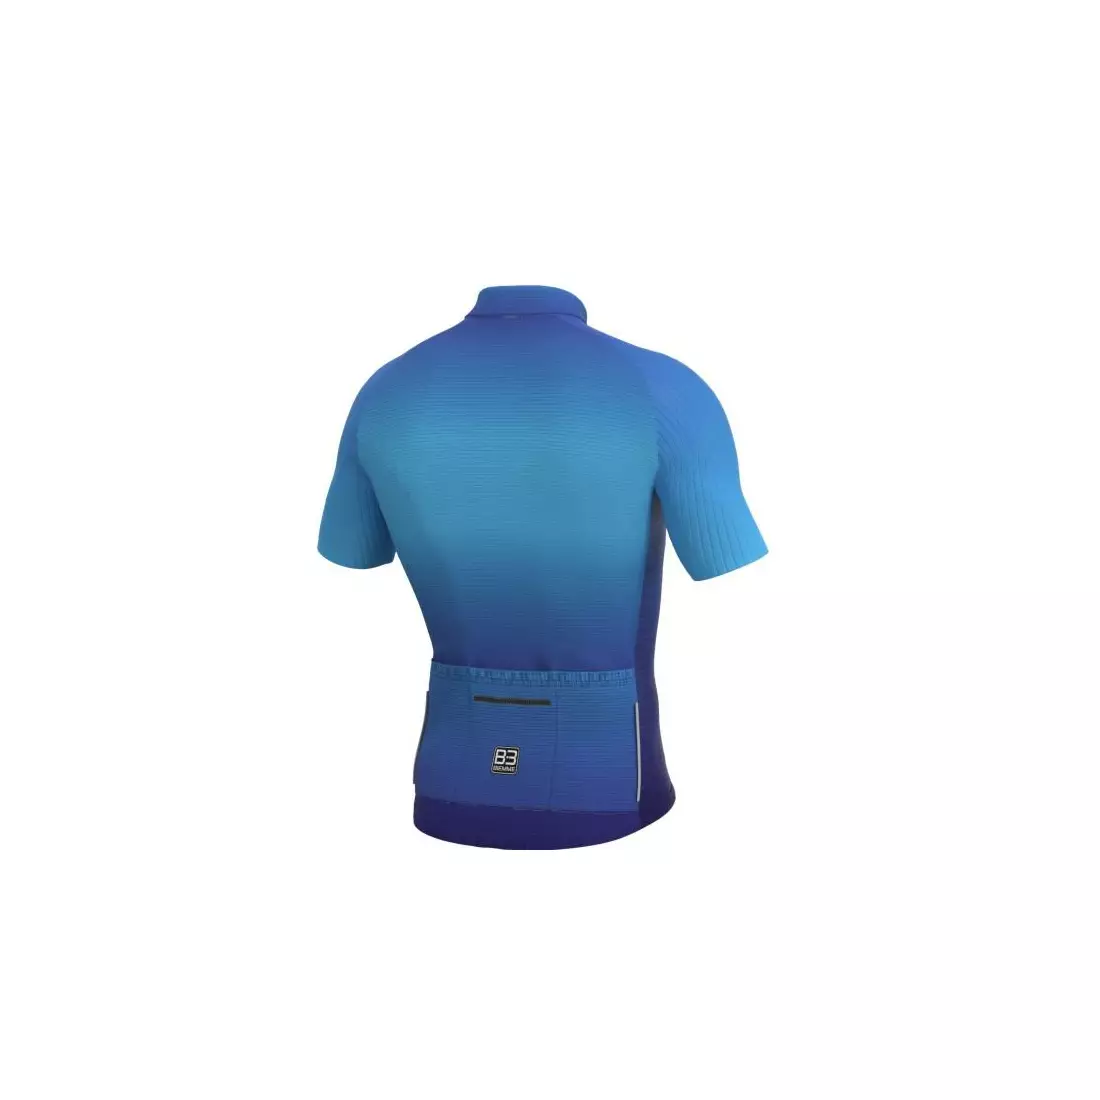 Biemme pánský cyklistický dres koszulka SUMMANO modrý